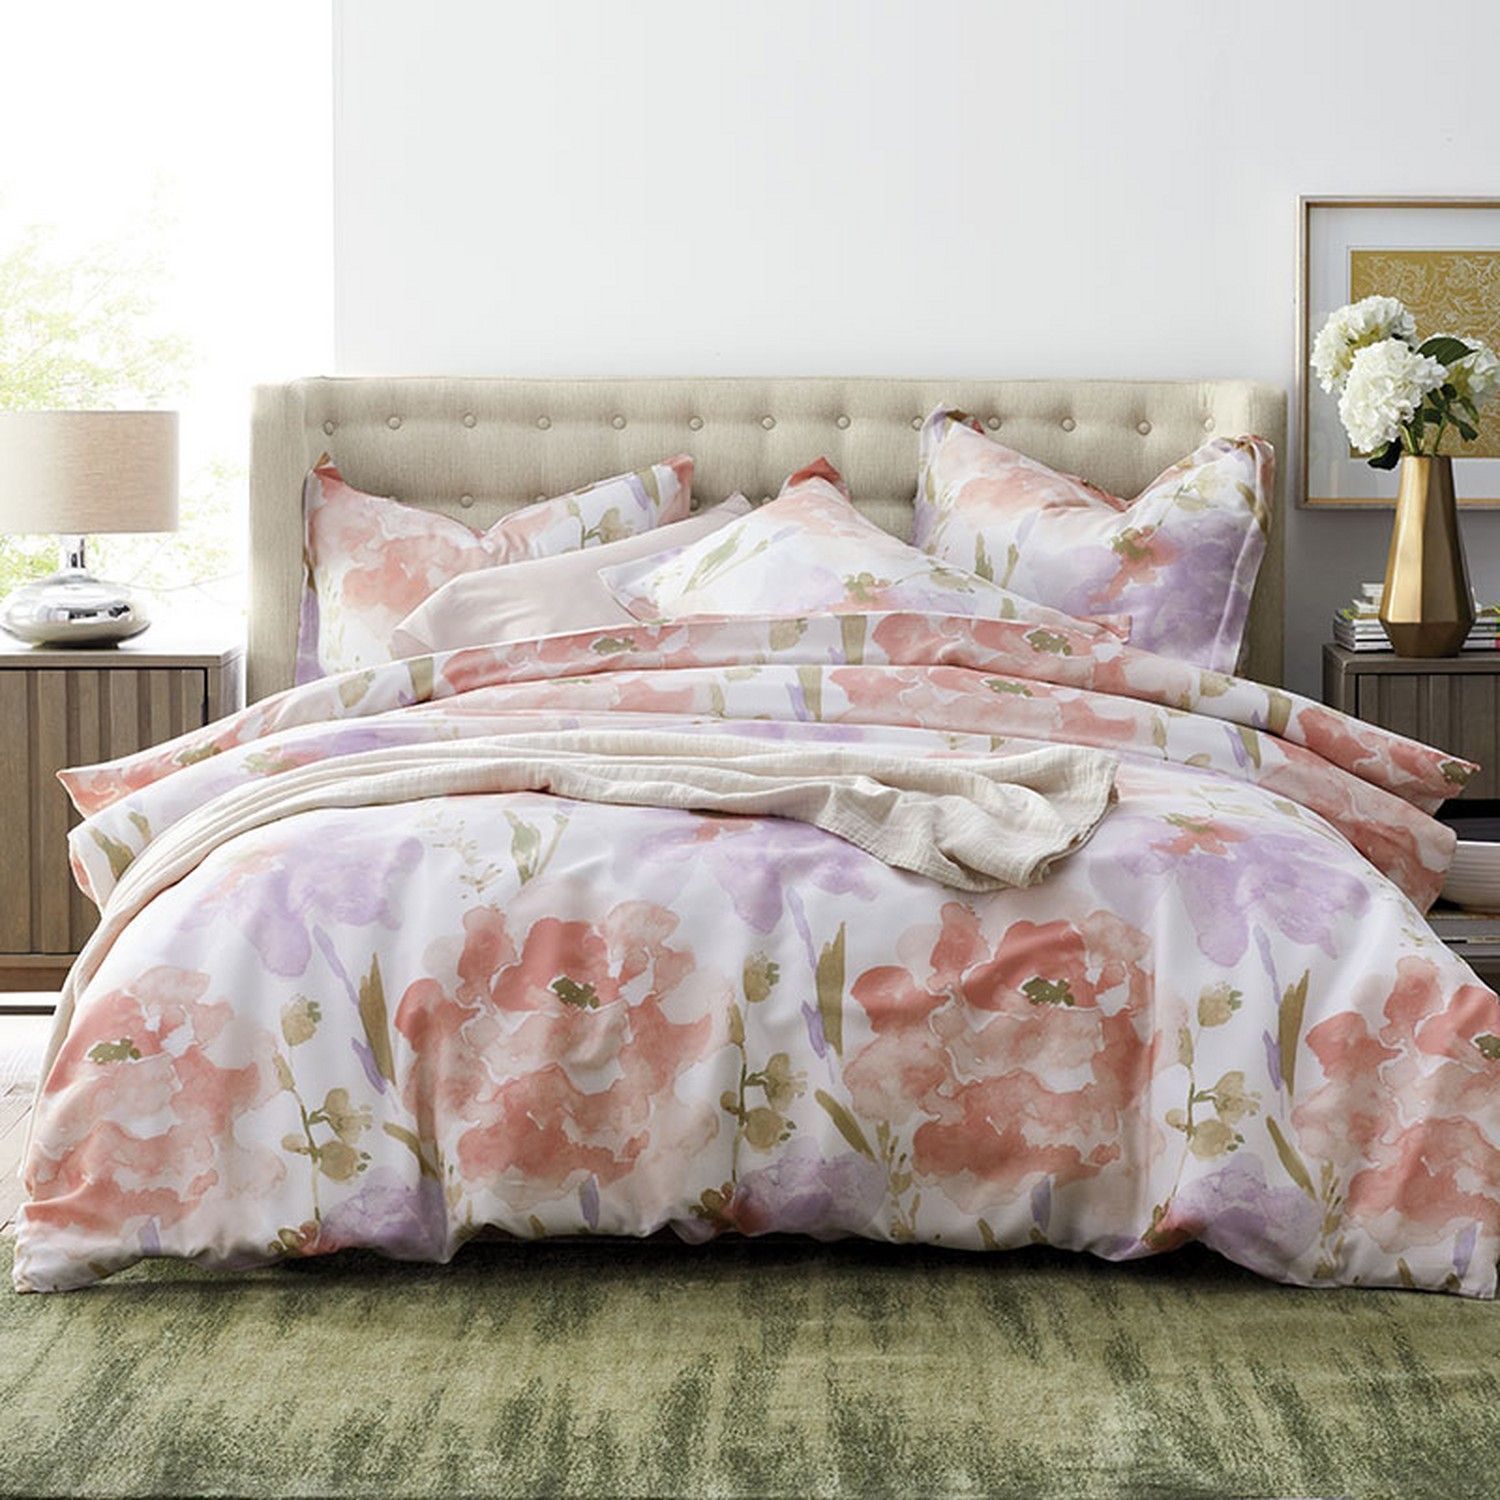 Celeste Cotton Bed Sheets Spread Comforter Duvet Cover Bedding Sets